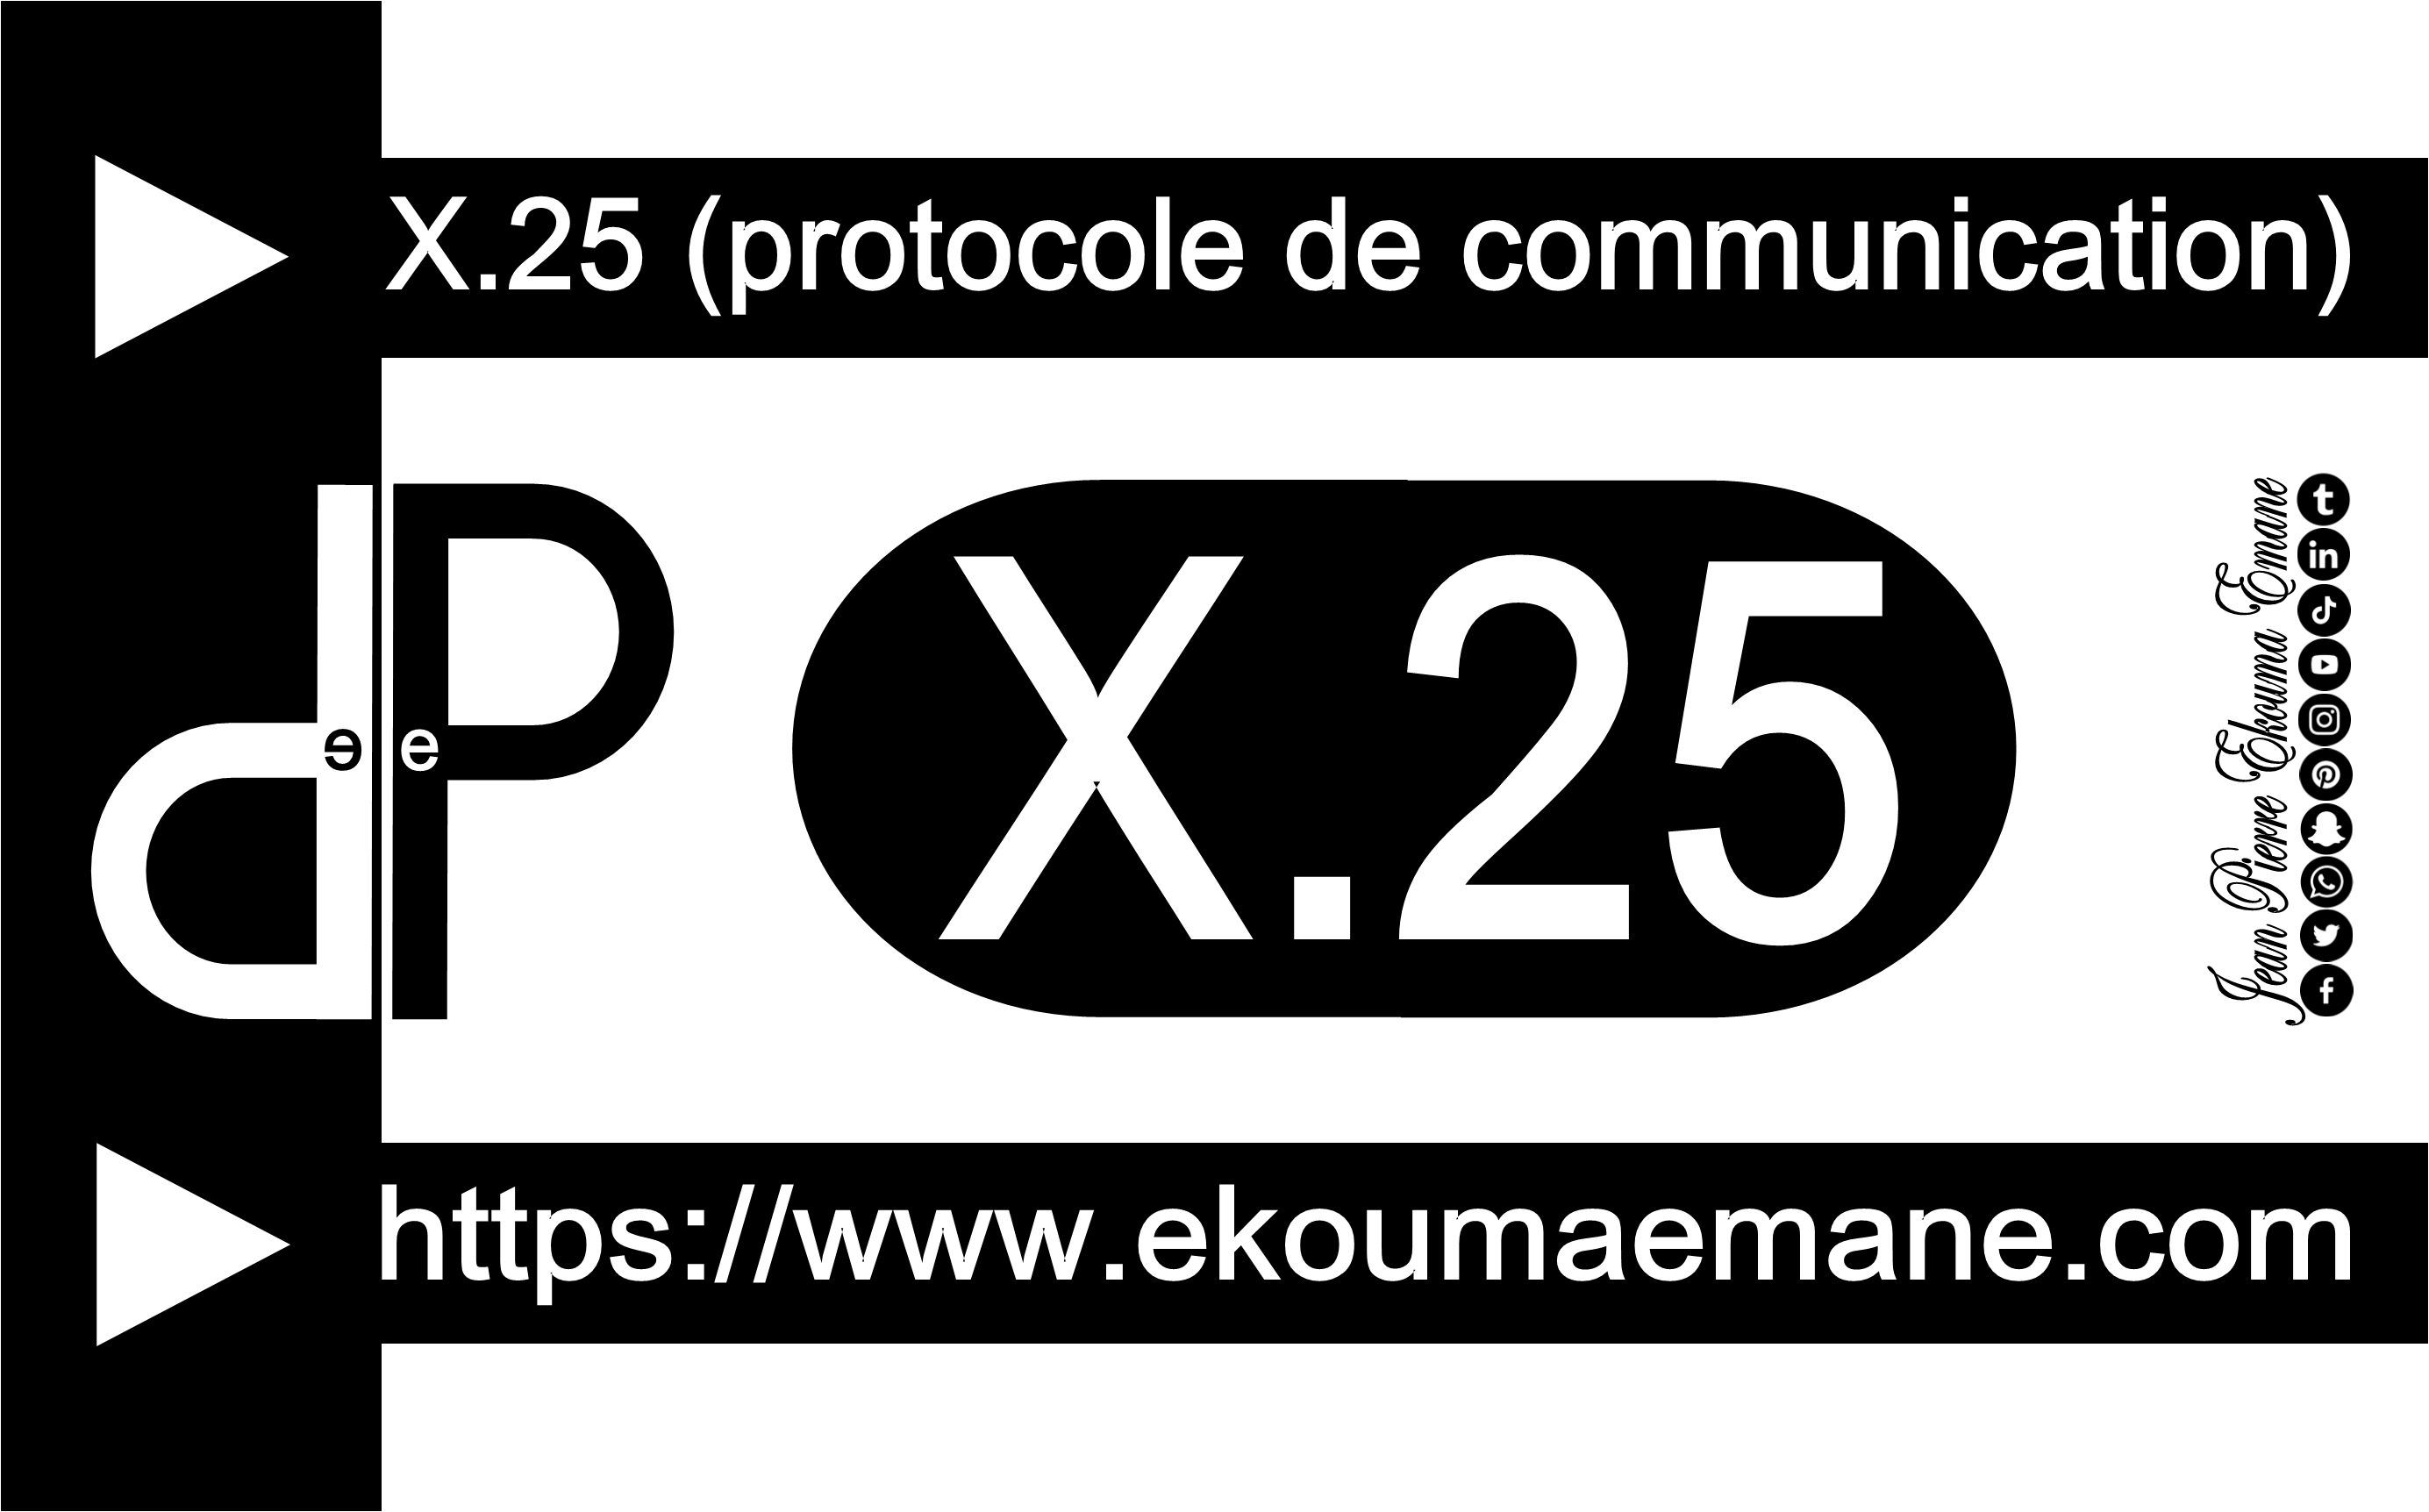 Protocole de communication (X.25)